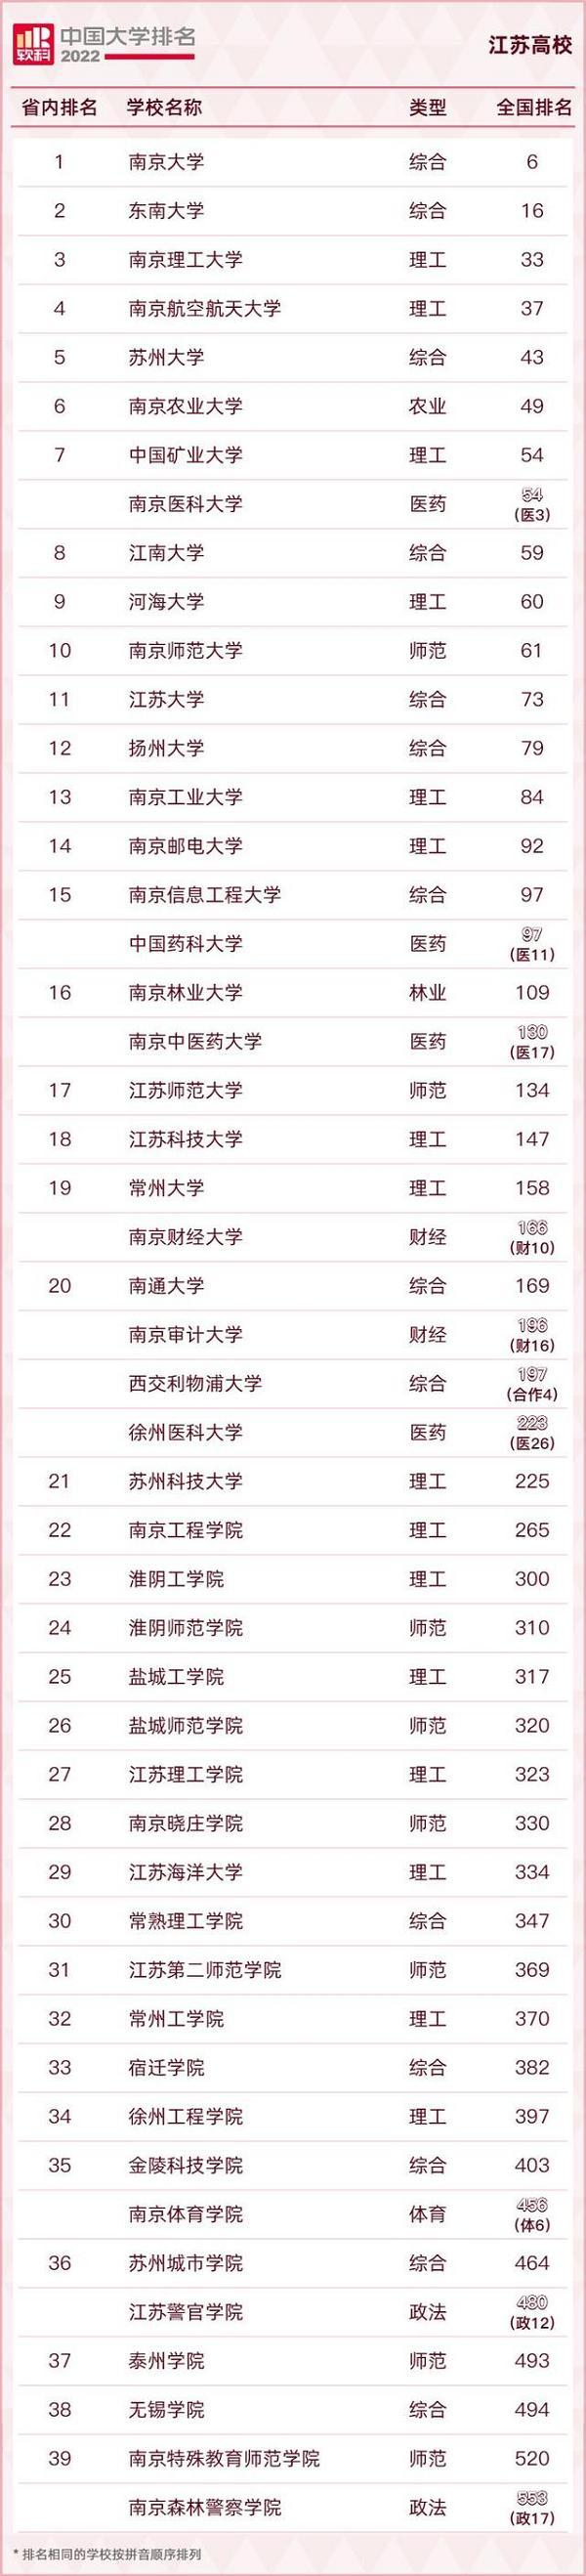 2022软科中国大学排名正式发布江苏15所高校跻身主榜百强